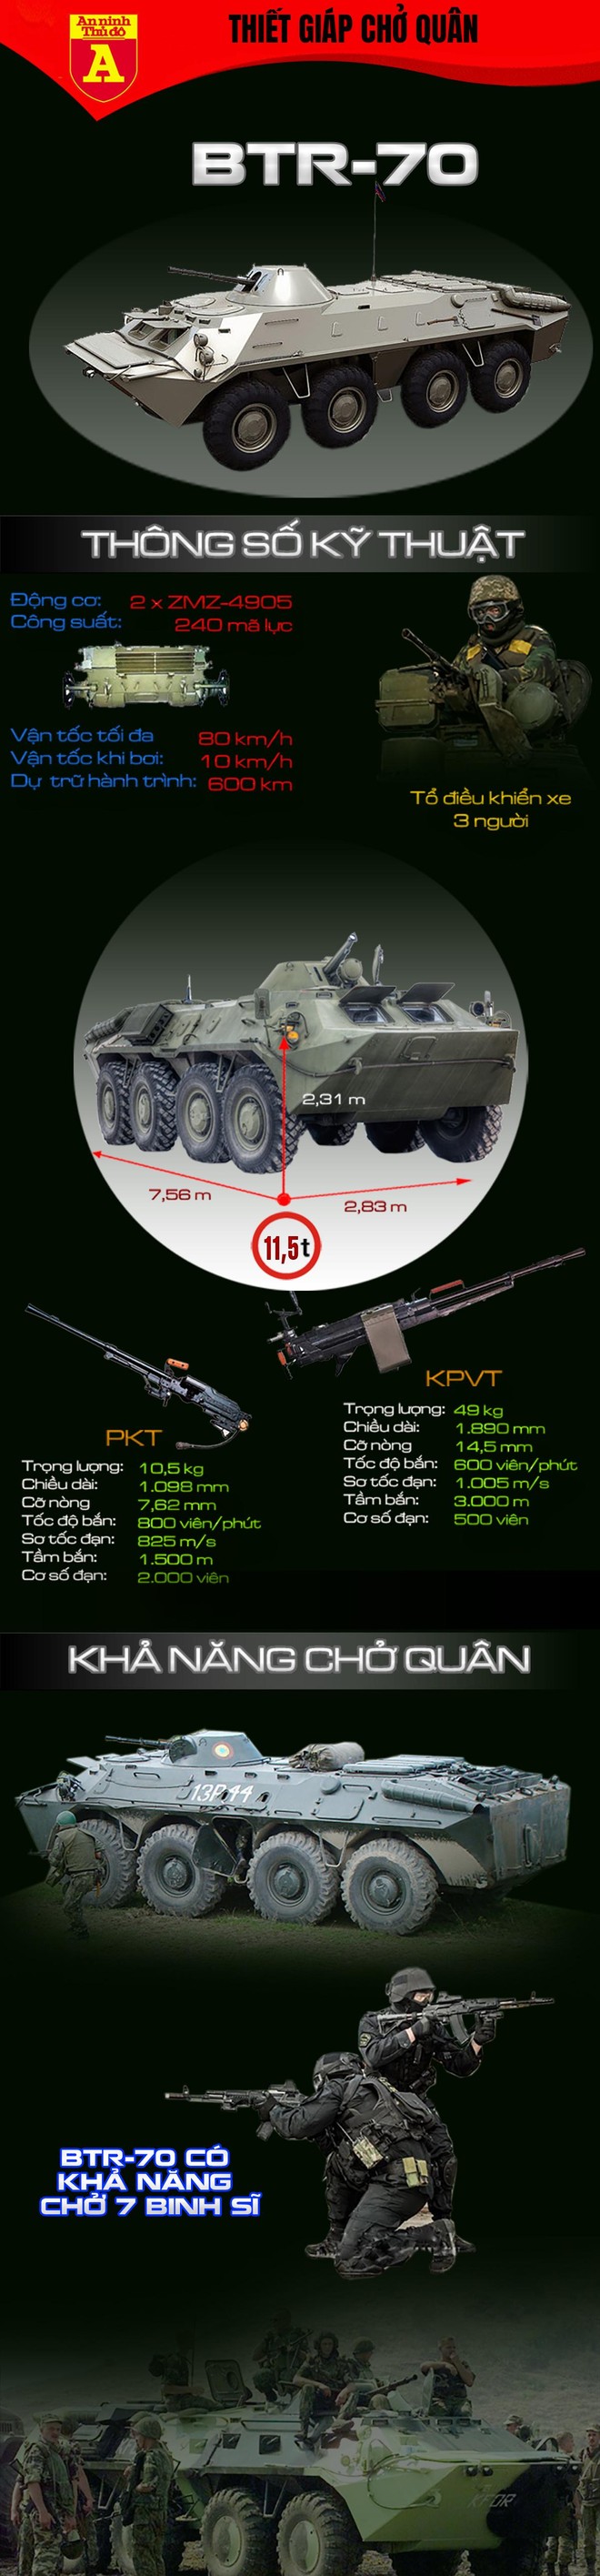 Đồng minh thân thiết của Nga cung cấp thiết giáp BTR-70 cho Ukraine ảnh 2